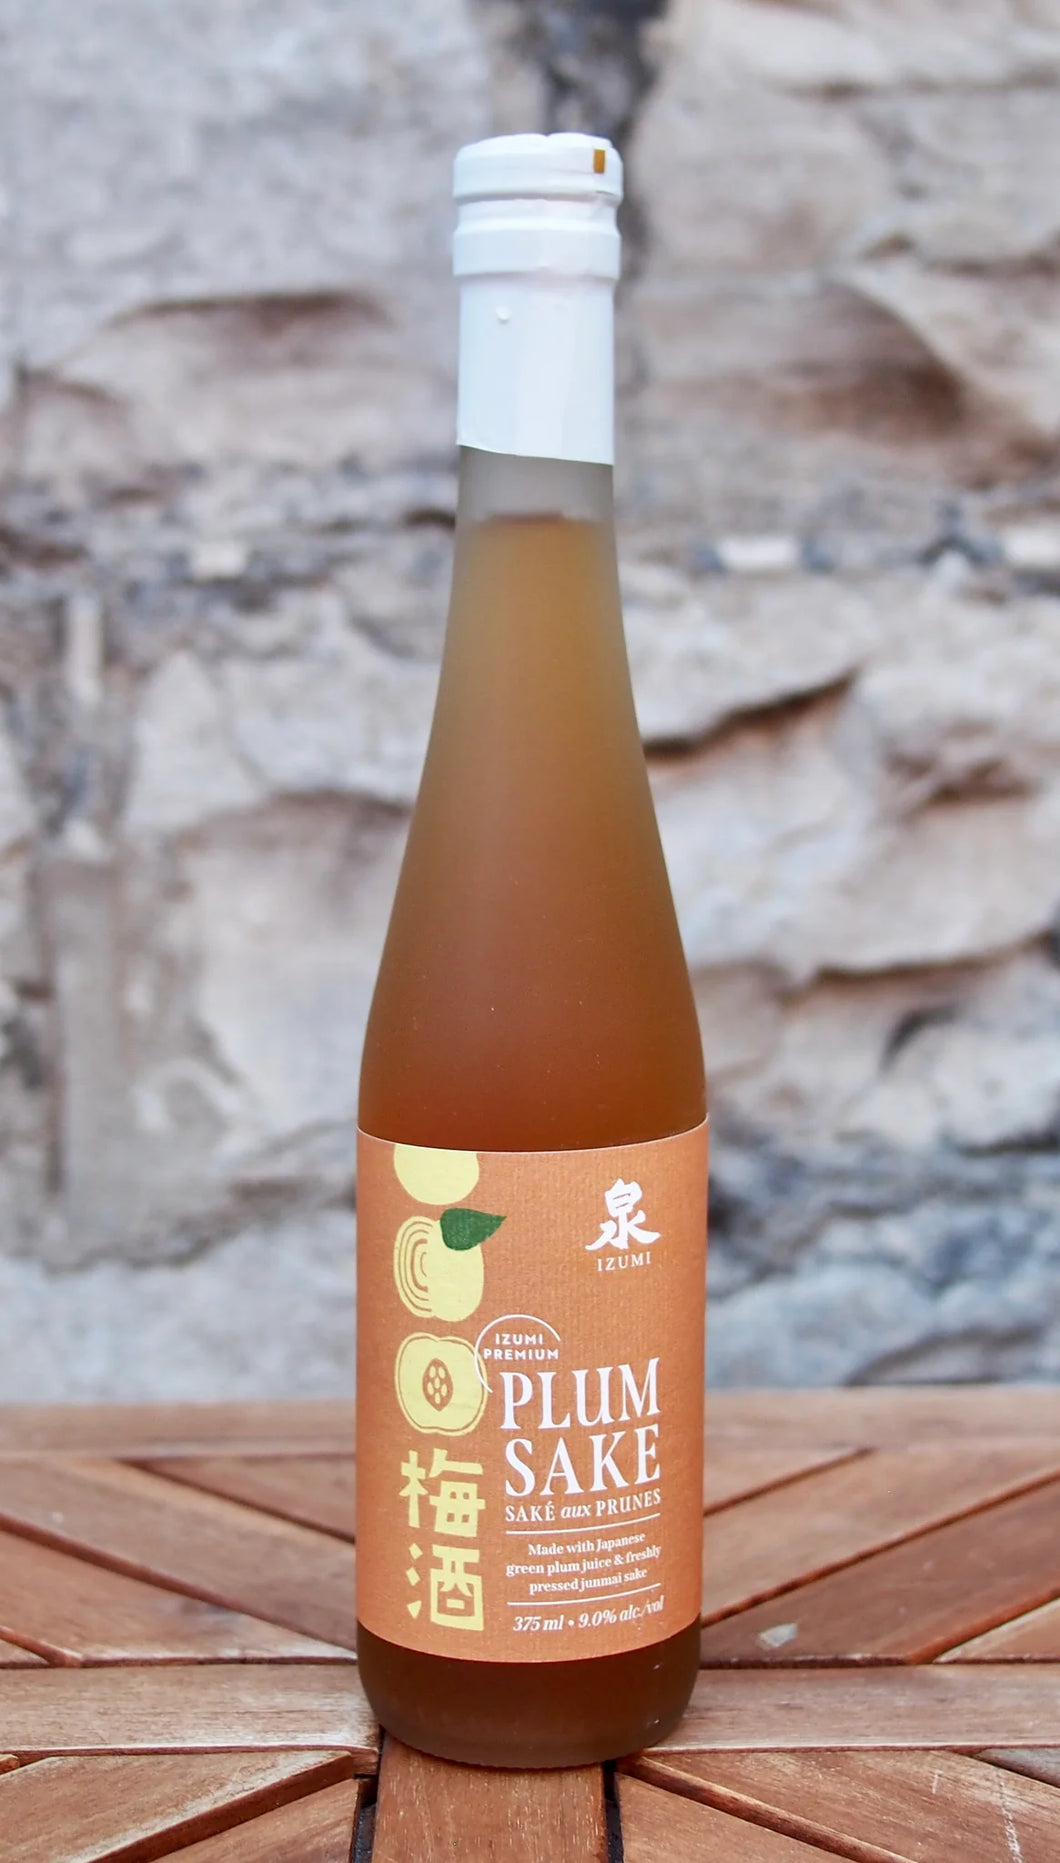 Plum Sake - Ontario Spring Water Sake